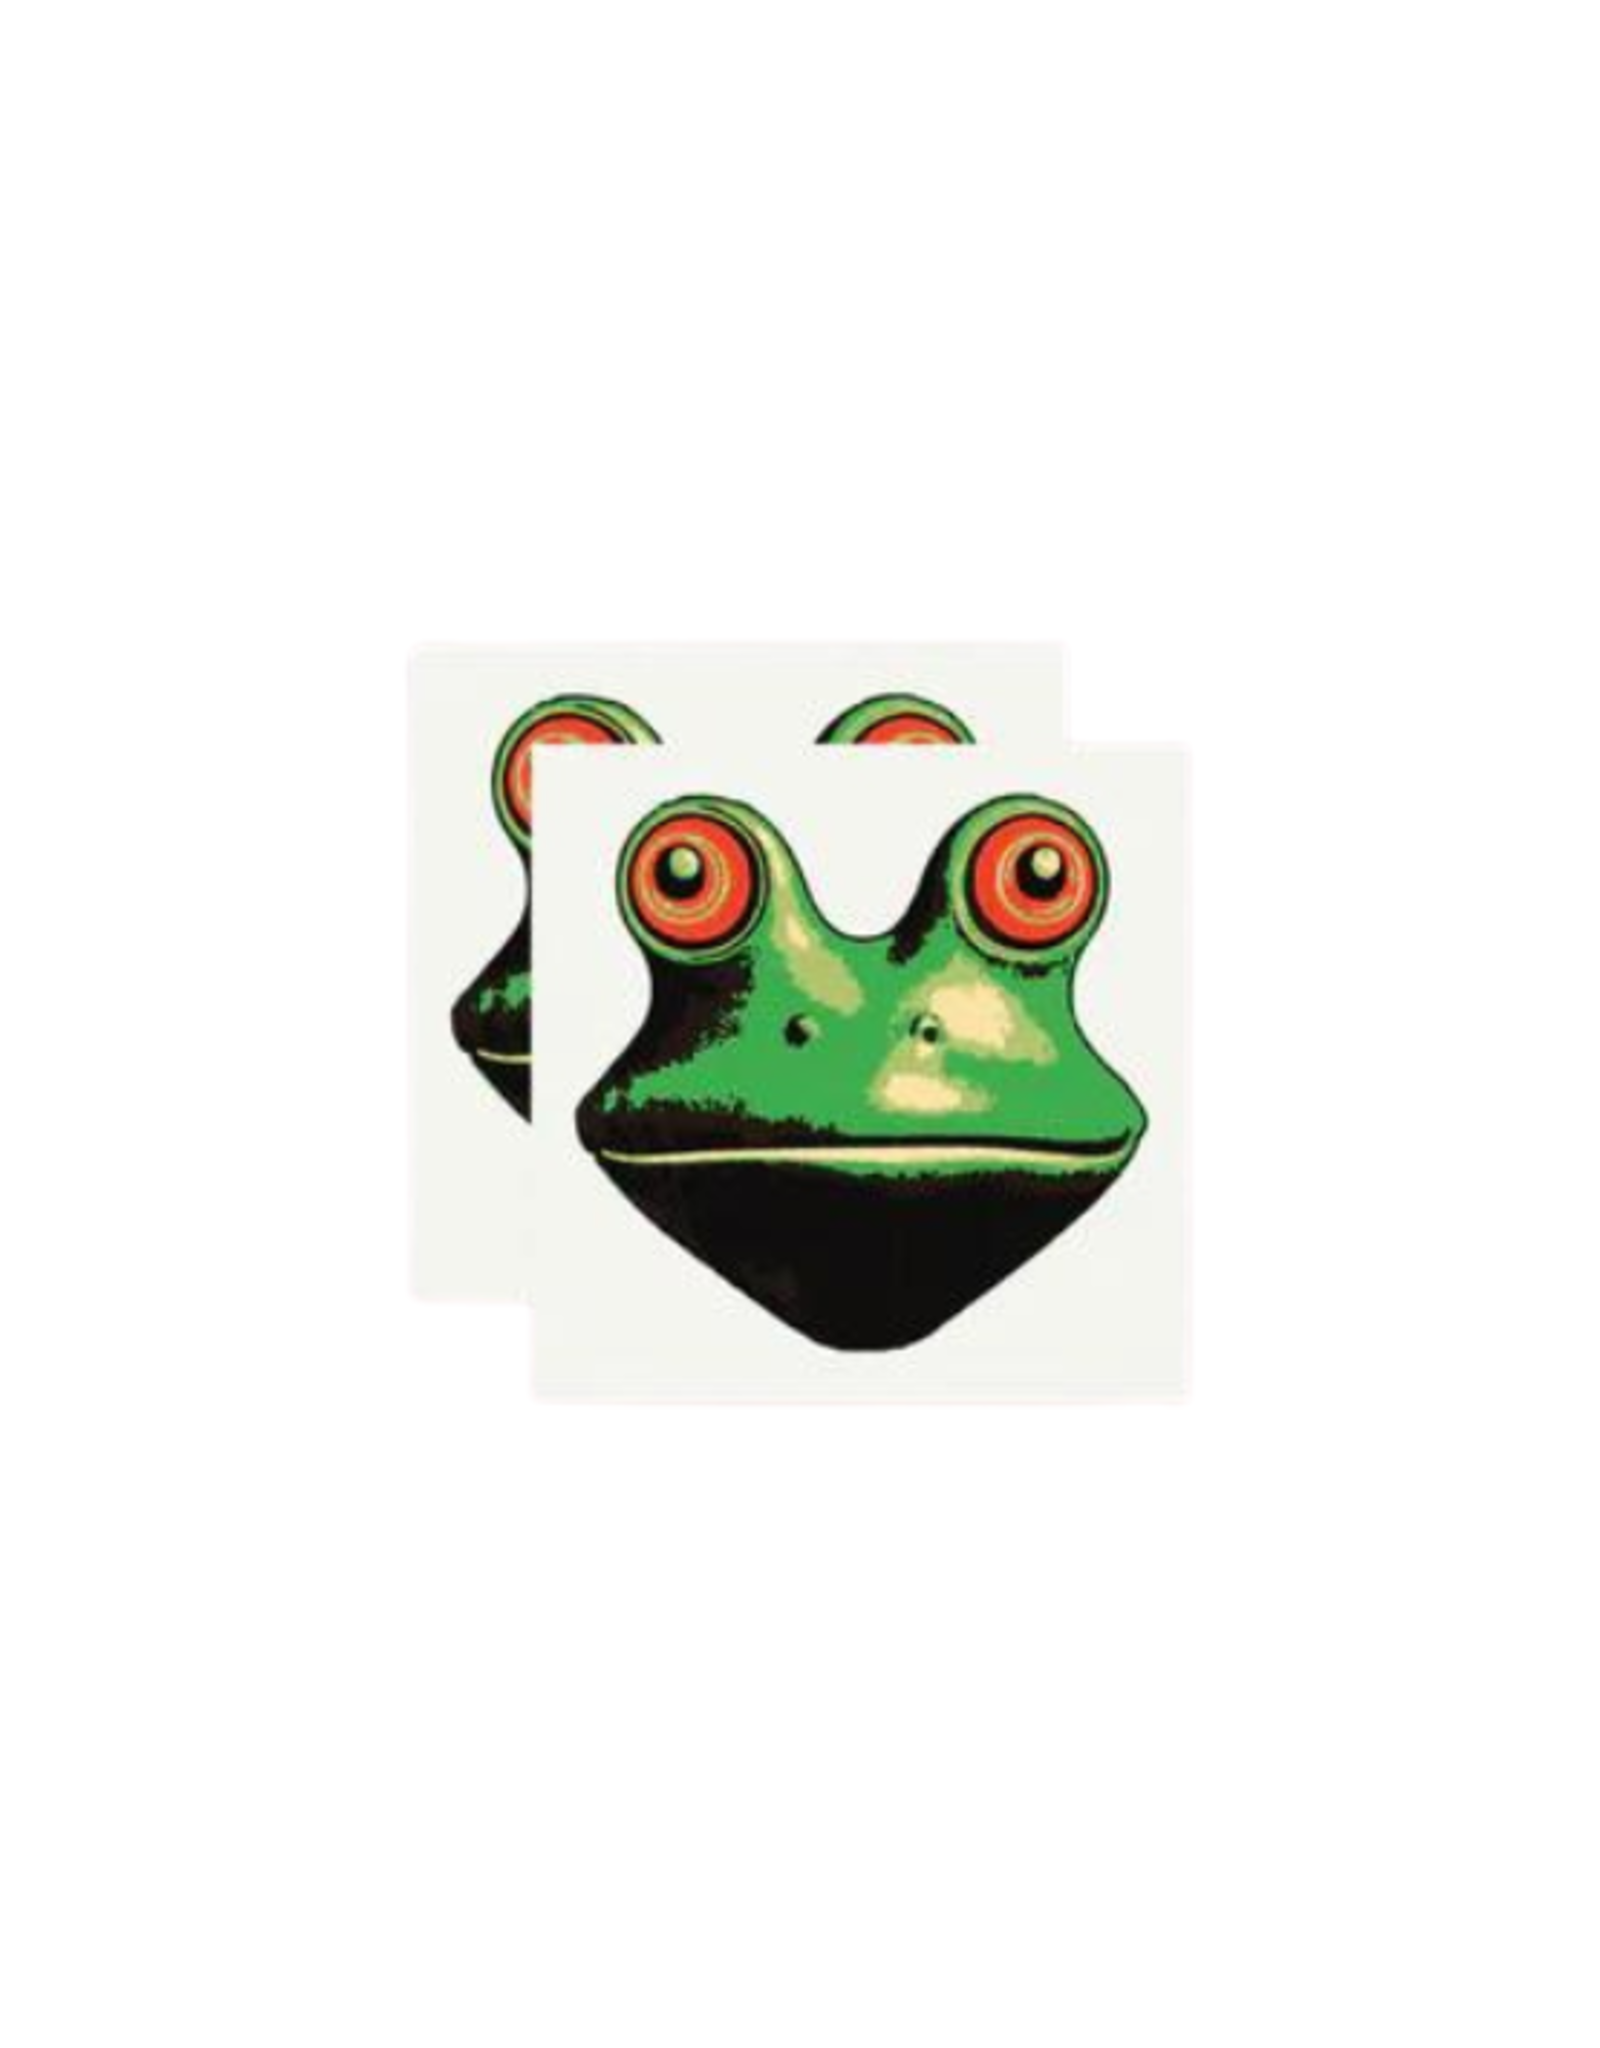 Tattly Tattly - Trippy Frog Tattoo Pair